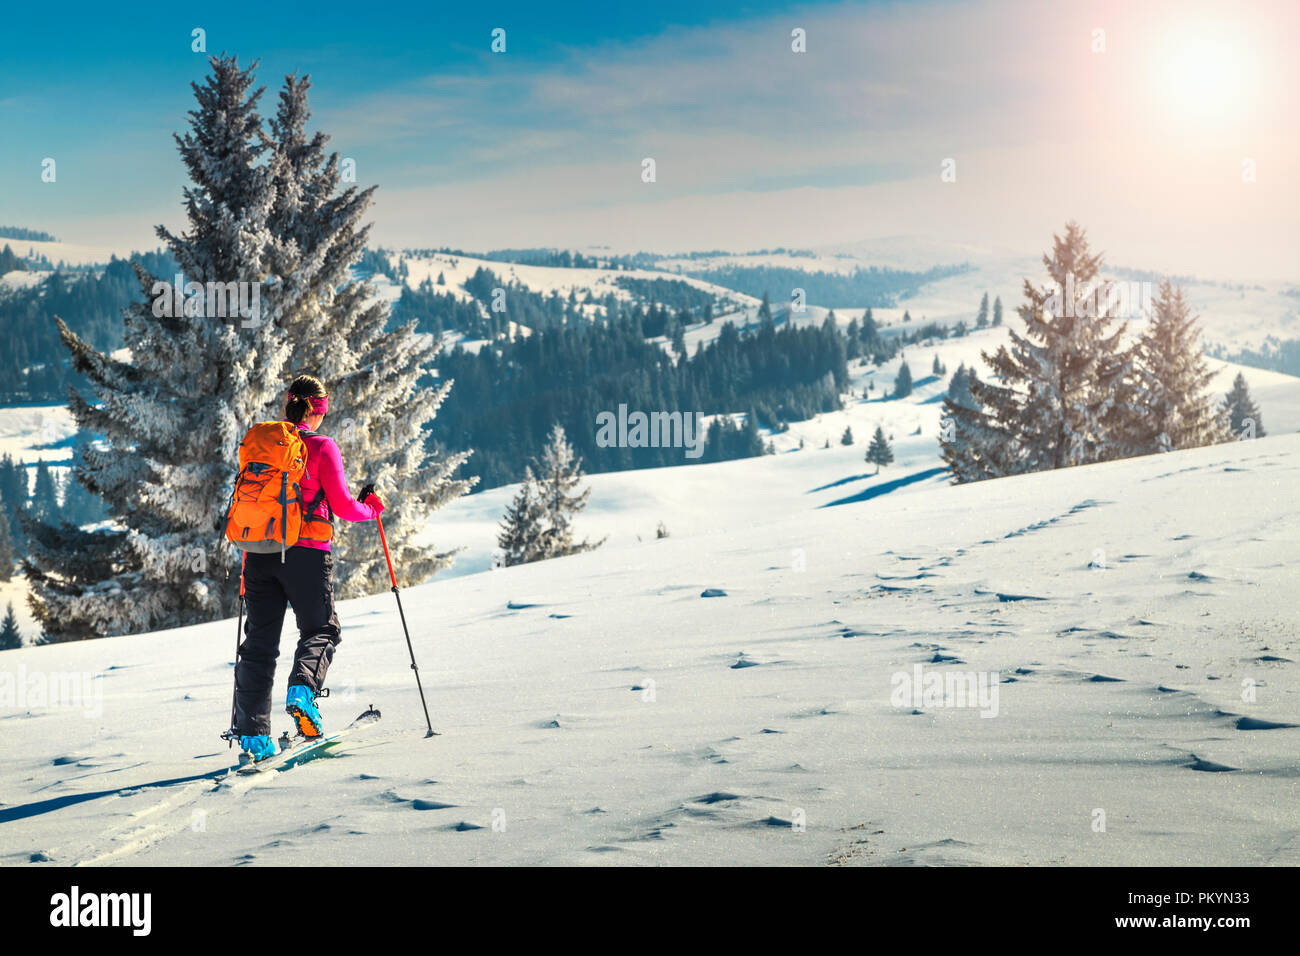 Skitouren in hochalpine Landschaft mit schneebedeckten Bäumen. Abenteuer, Winter Aktivitäten, Skitouren in spektakulären Bergen, Siebenbürgen, Karpaten, R Stockfoto